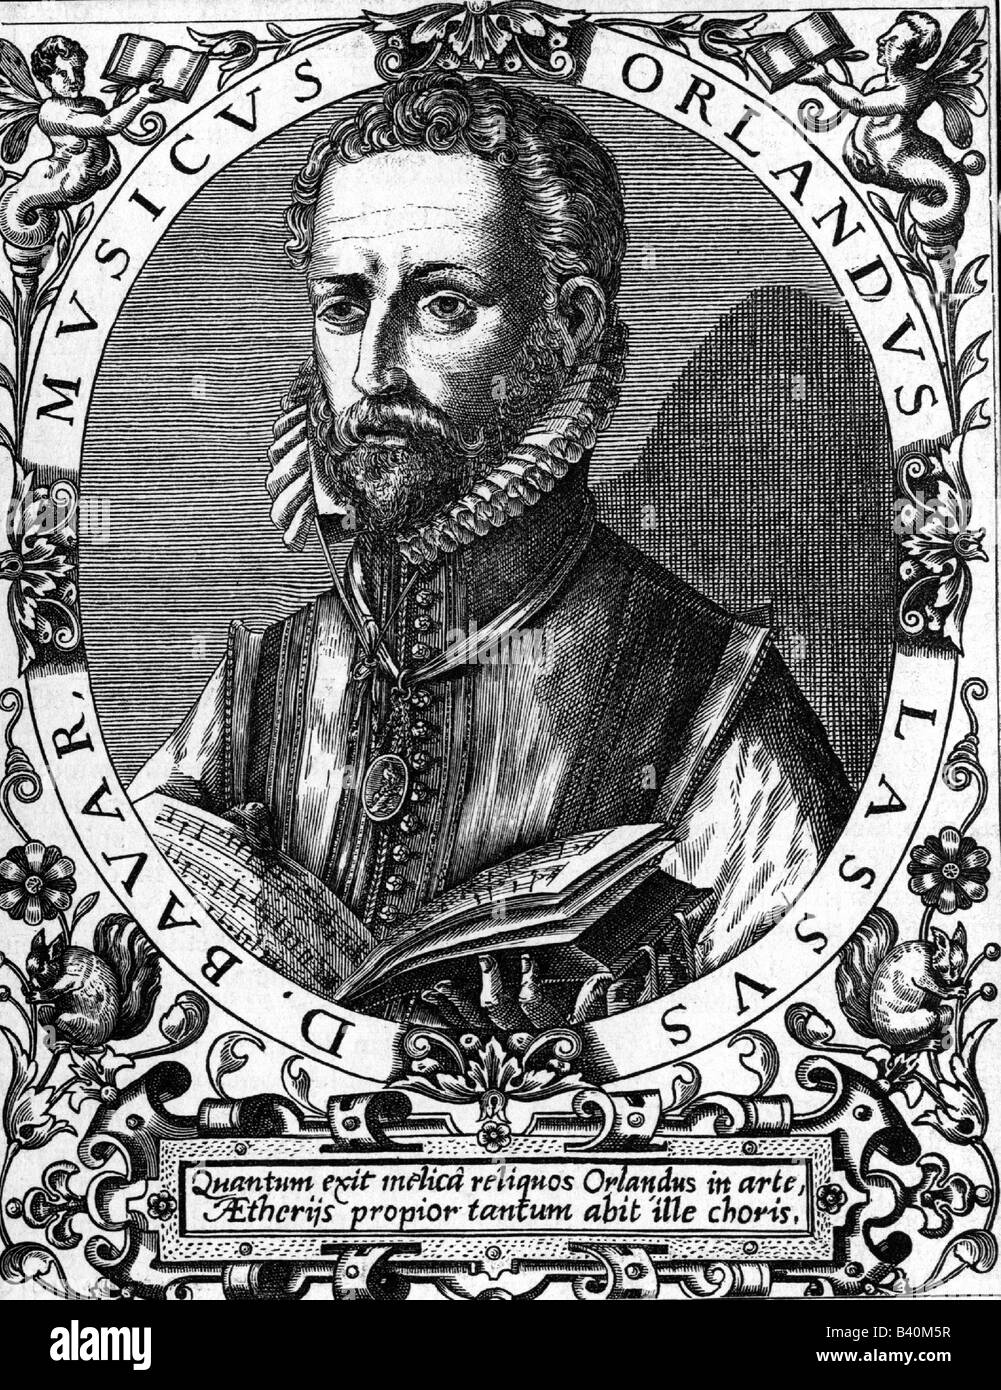 Lassus, Orlande de, 1532 - 14.6.1594, compositeur flamand, portrait, gravure par R.Bong après gravure, contemporain de l'artiste , Copyright n'a pas à être effacée Banque D'Images